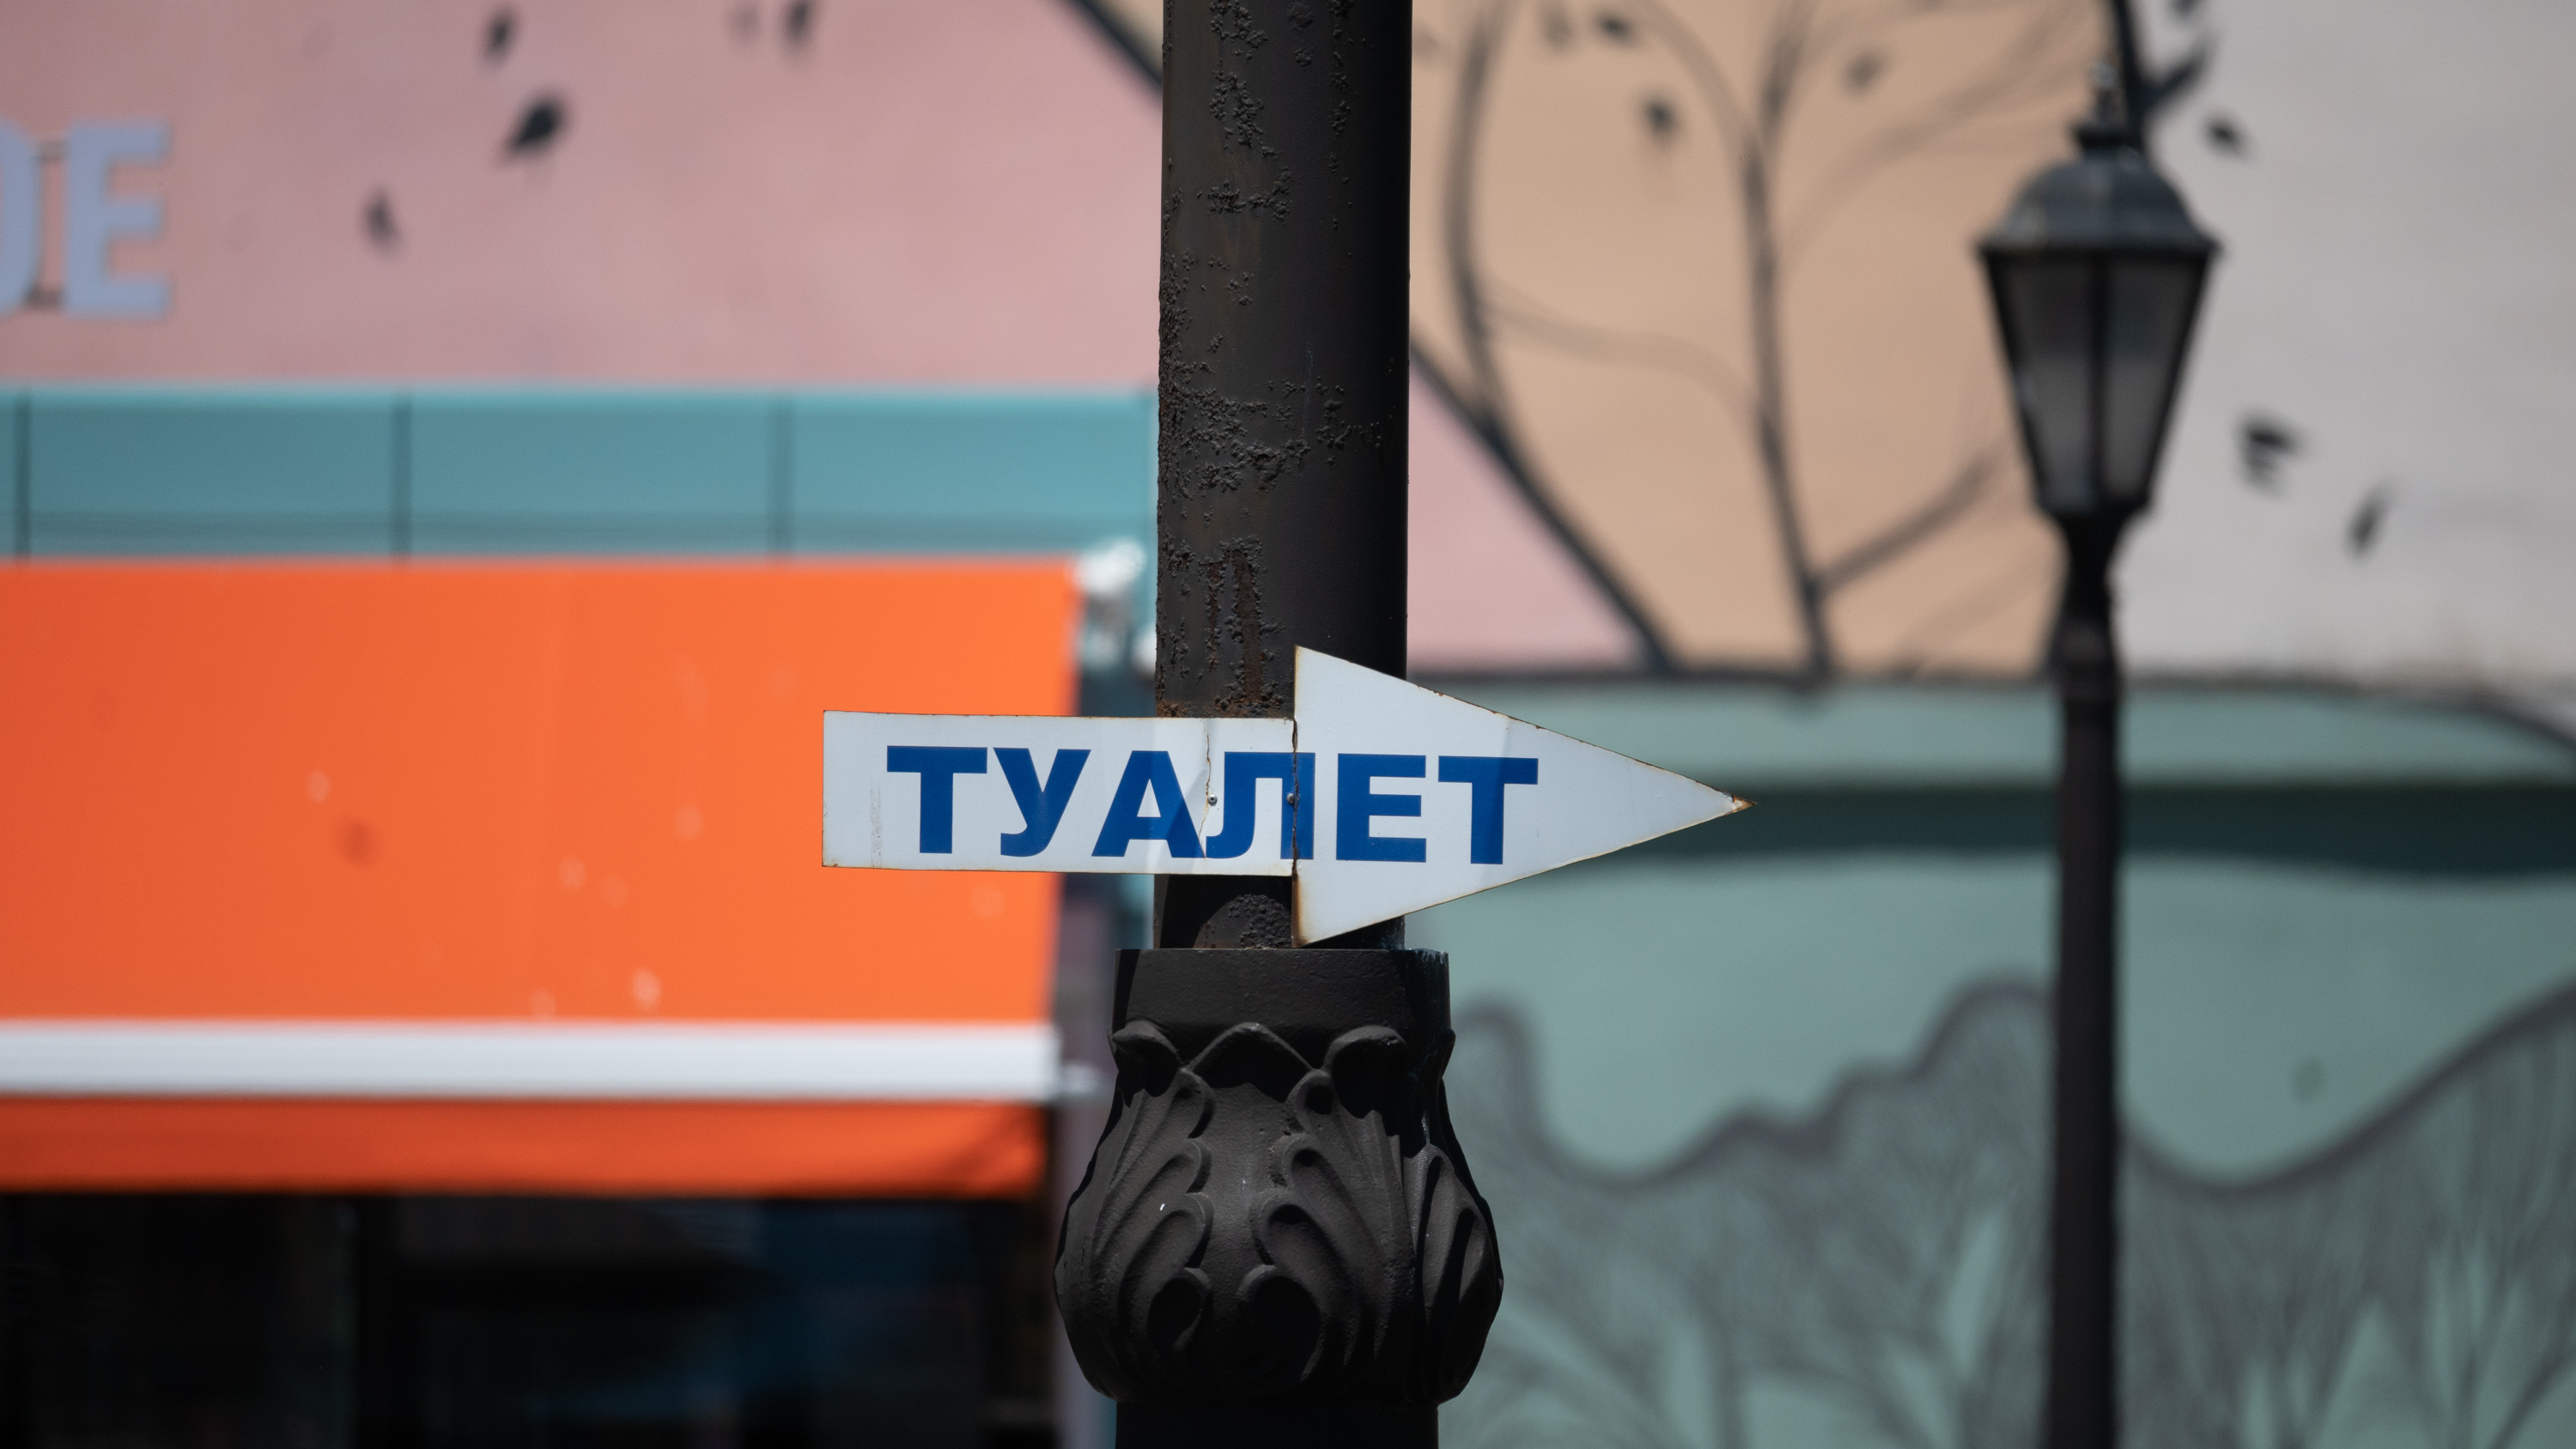 По нужде. Где в центре Владивостока можно бесплатно сходить в туалет?